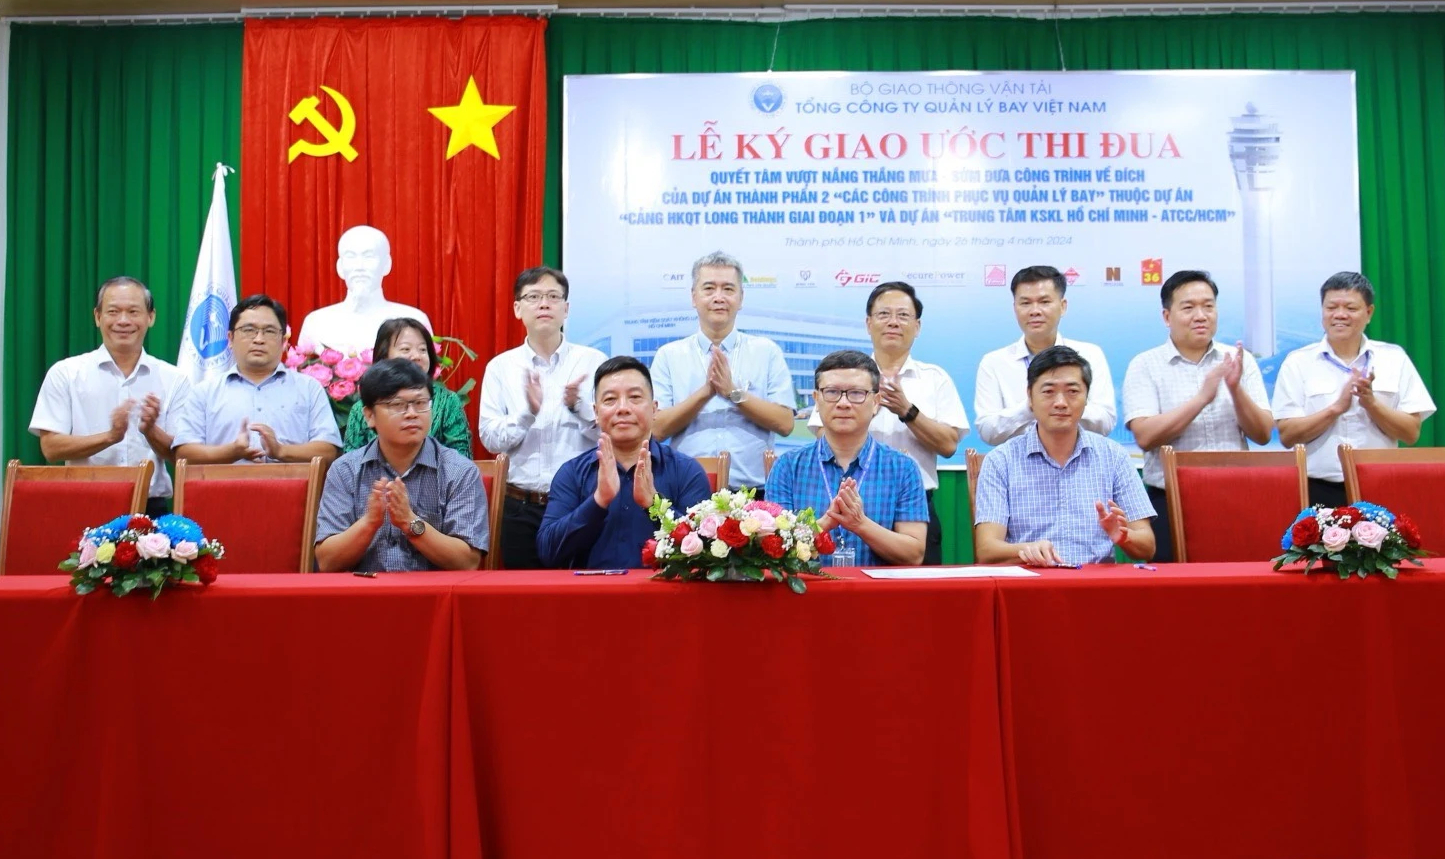 Tổng công ty Quản lý bay Việt Nam cùng chủ đầu tư và các nhà thầu đã ký giao ước thi đua